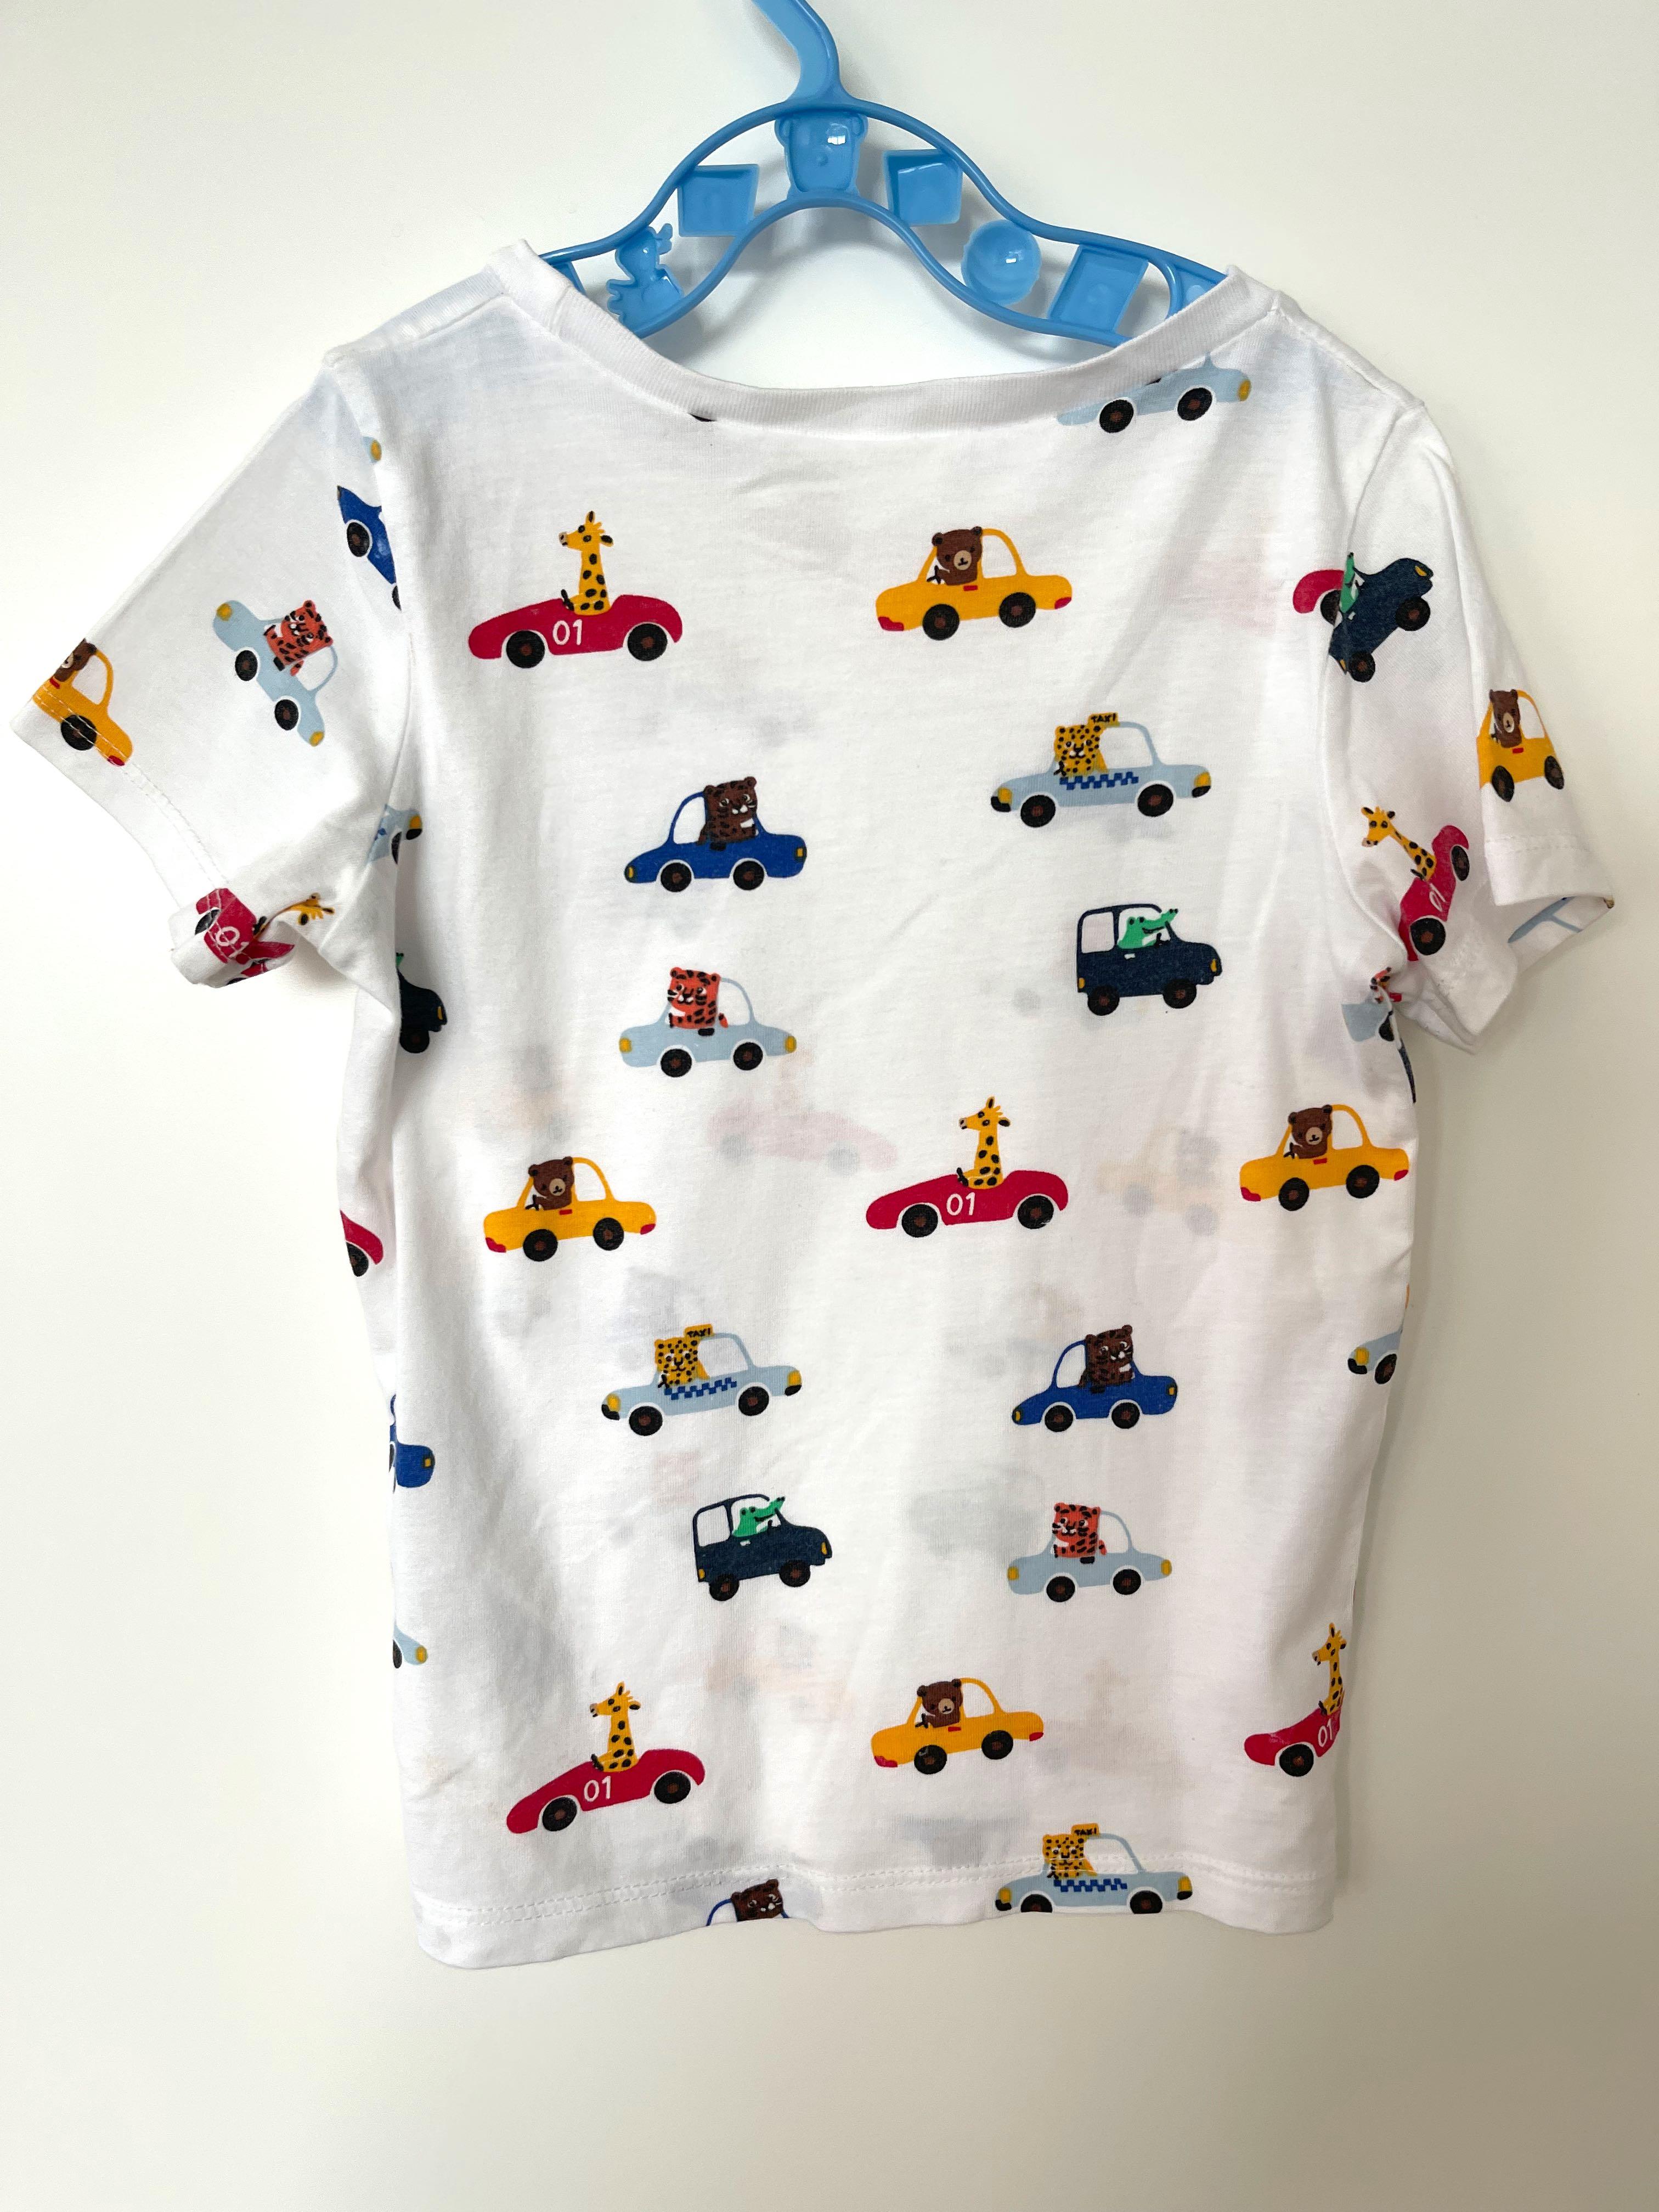 H&M kids animal car T-shirt size 1-2 years, Babies & Kids, Babies & Kids  Fashion on Carousell